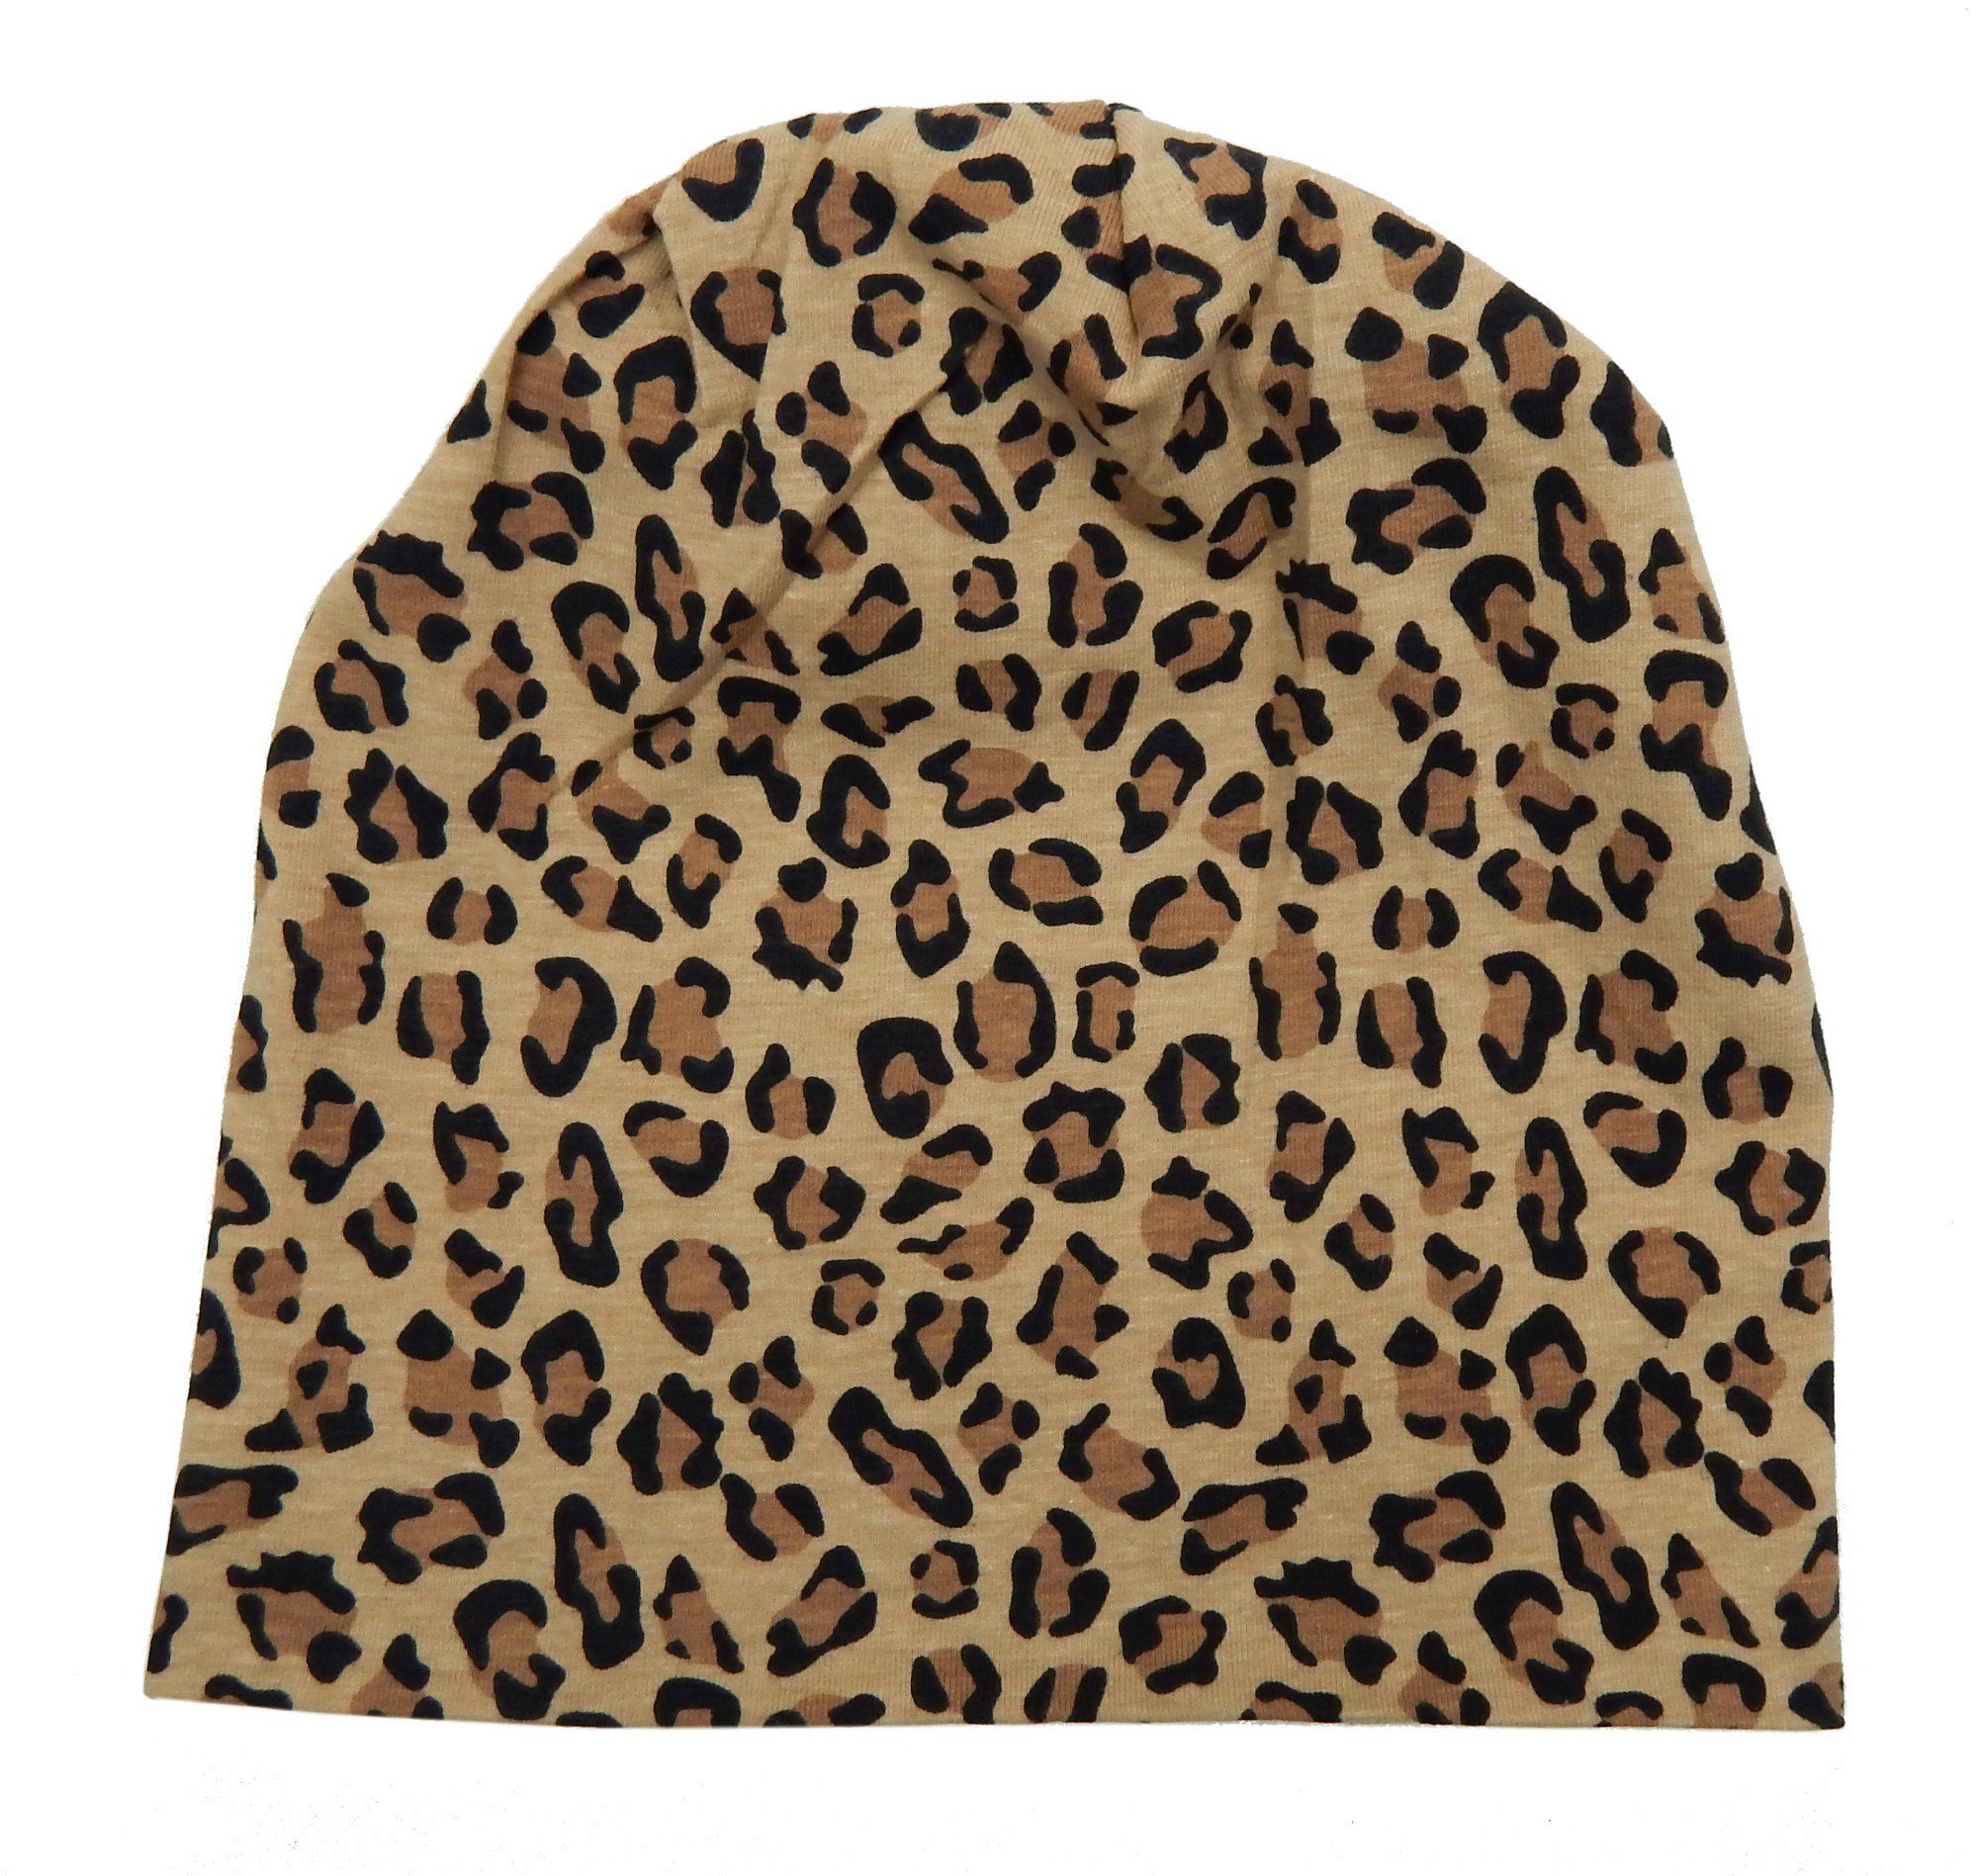 Ella Jonte Beanie Kinder Mädchen Long Beanie Leopard braun beige schwarz 52- 54 cm